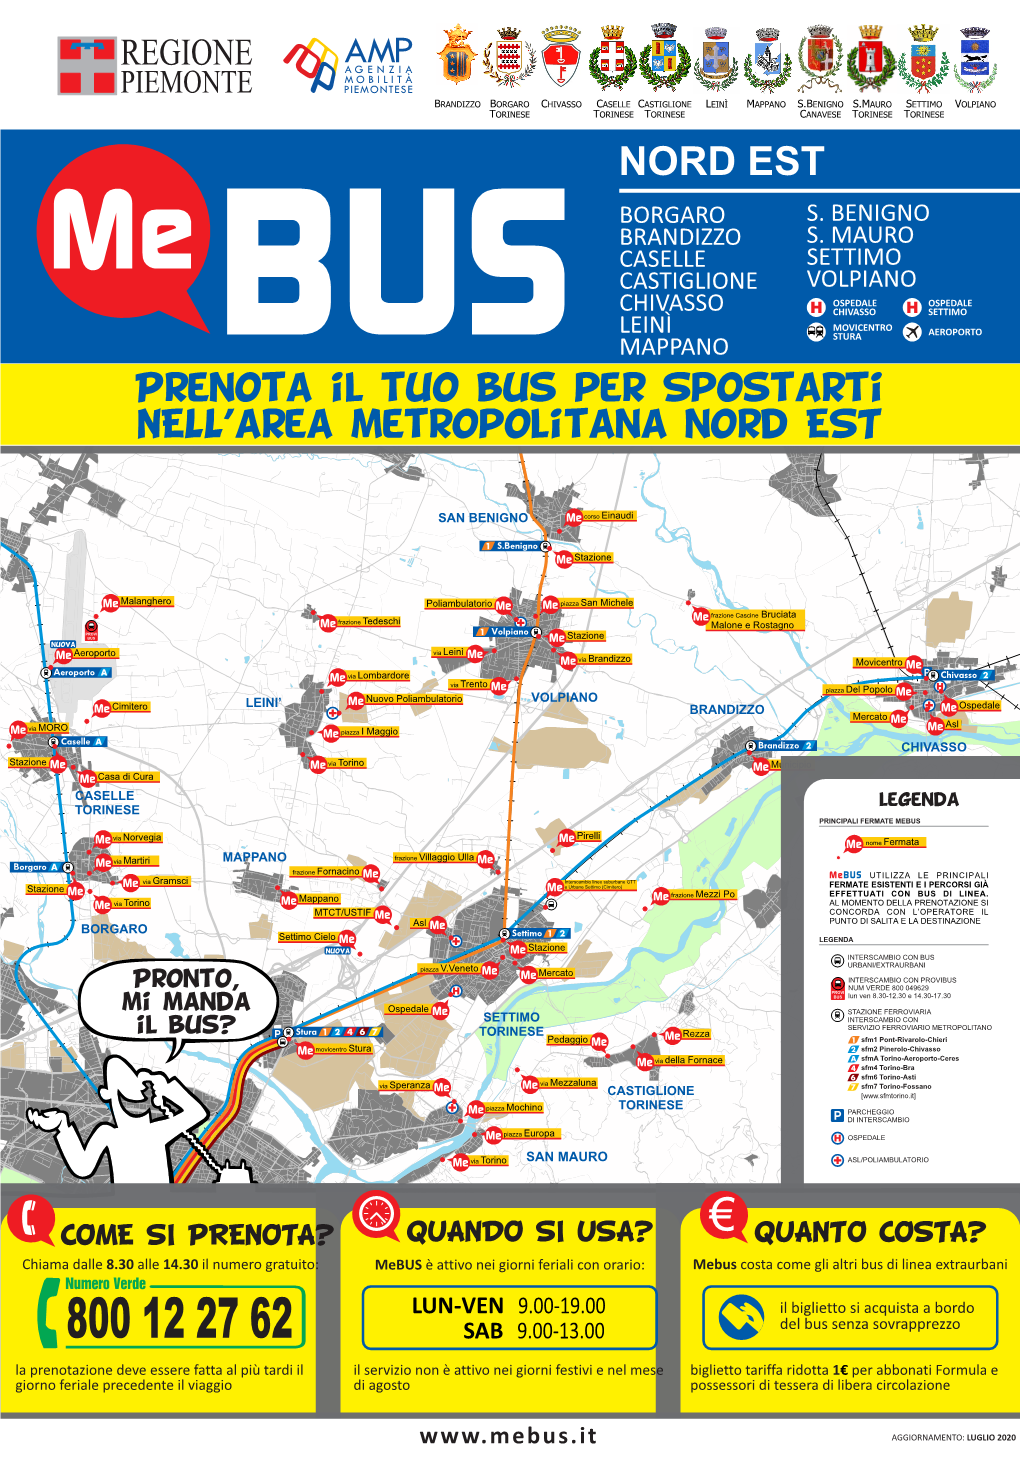 Prenota Il Tuo Bus Per Spostarti NELL'area Metropolitana Nord